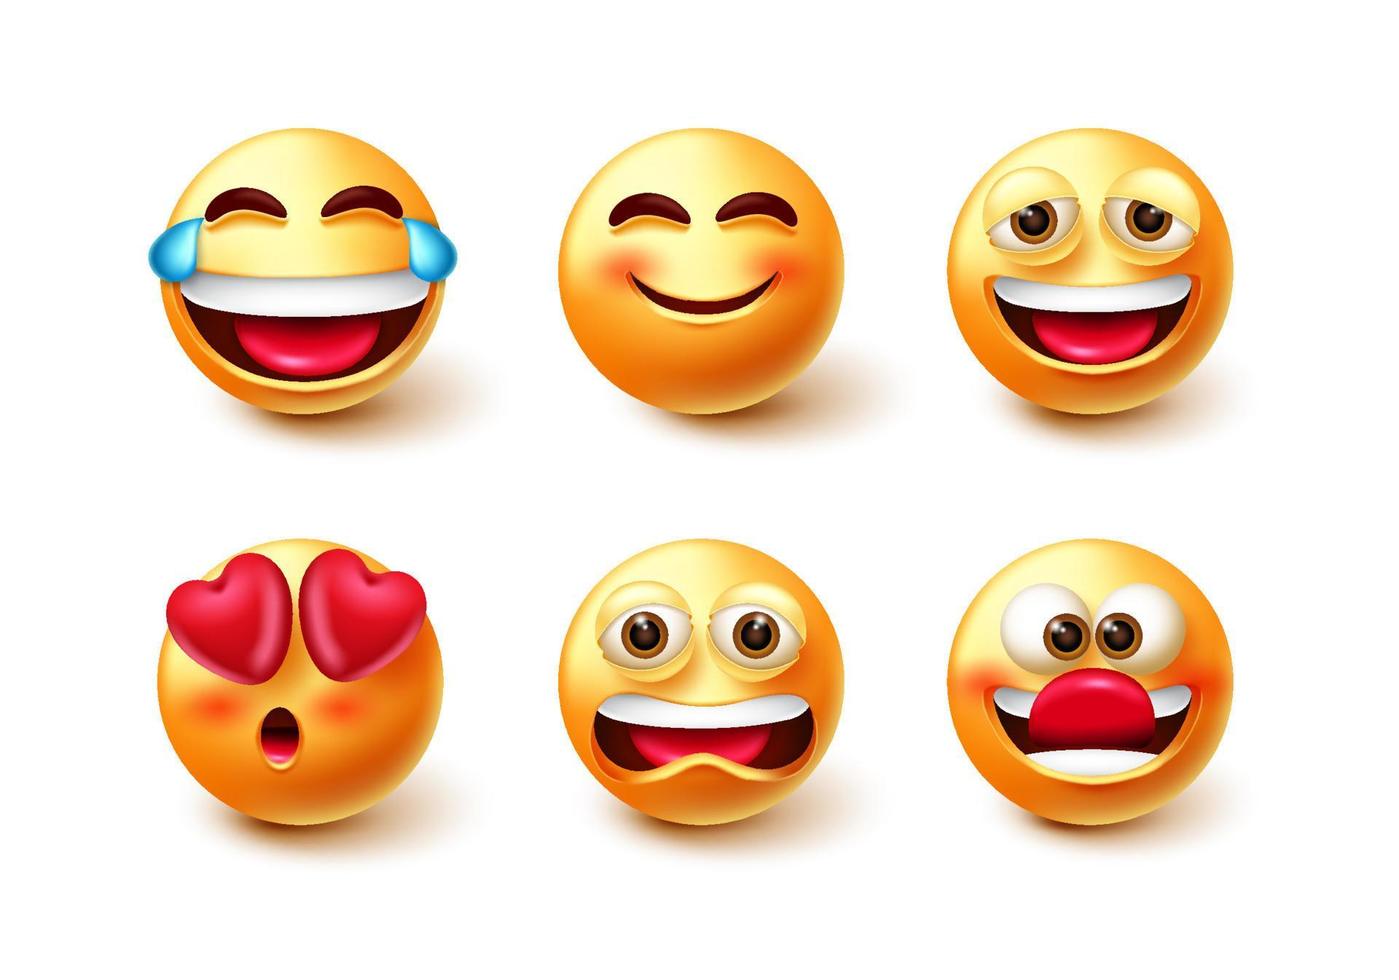 emoji tecken vektor uppsättning. uttryckssymbol 3d-ikon med skrattande, leende, roliga och upprörda stämningsansiktsuttryck isolerade i vit bakgrund för design av karaktärsuttryckssymboler.